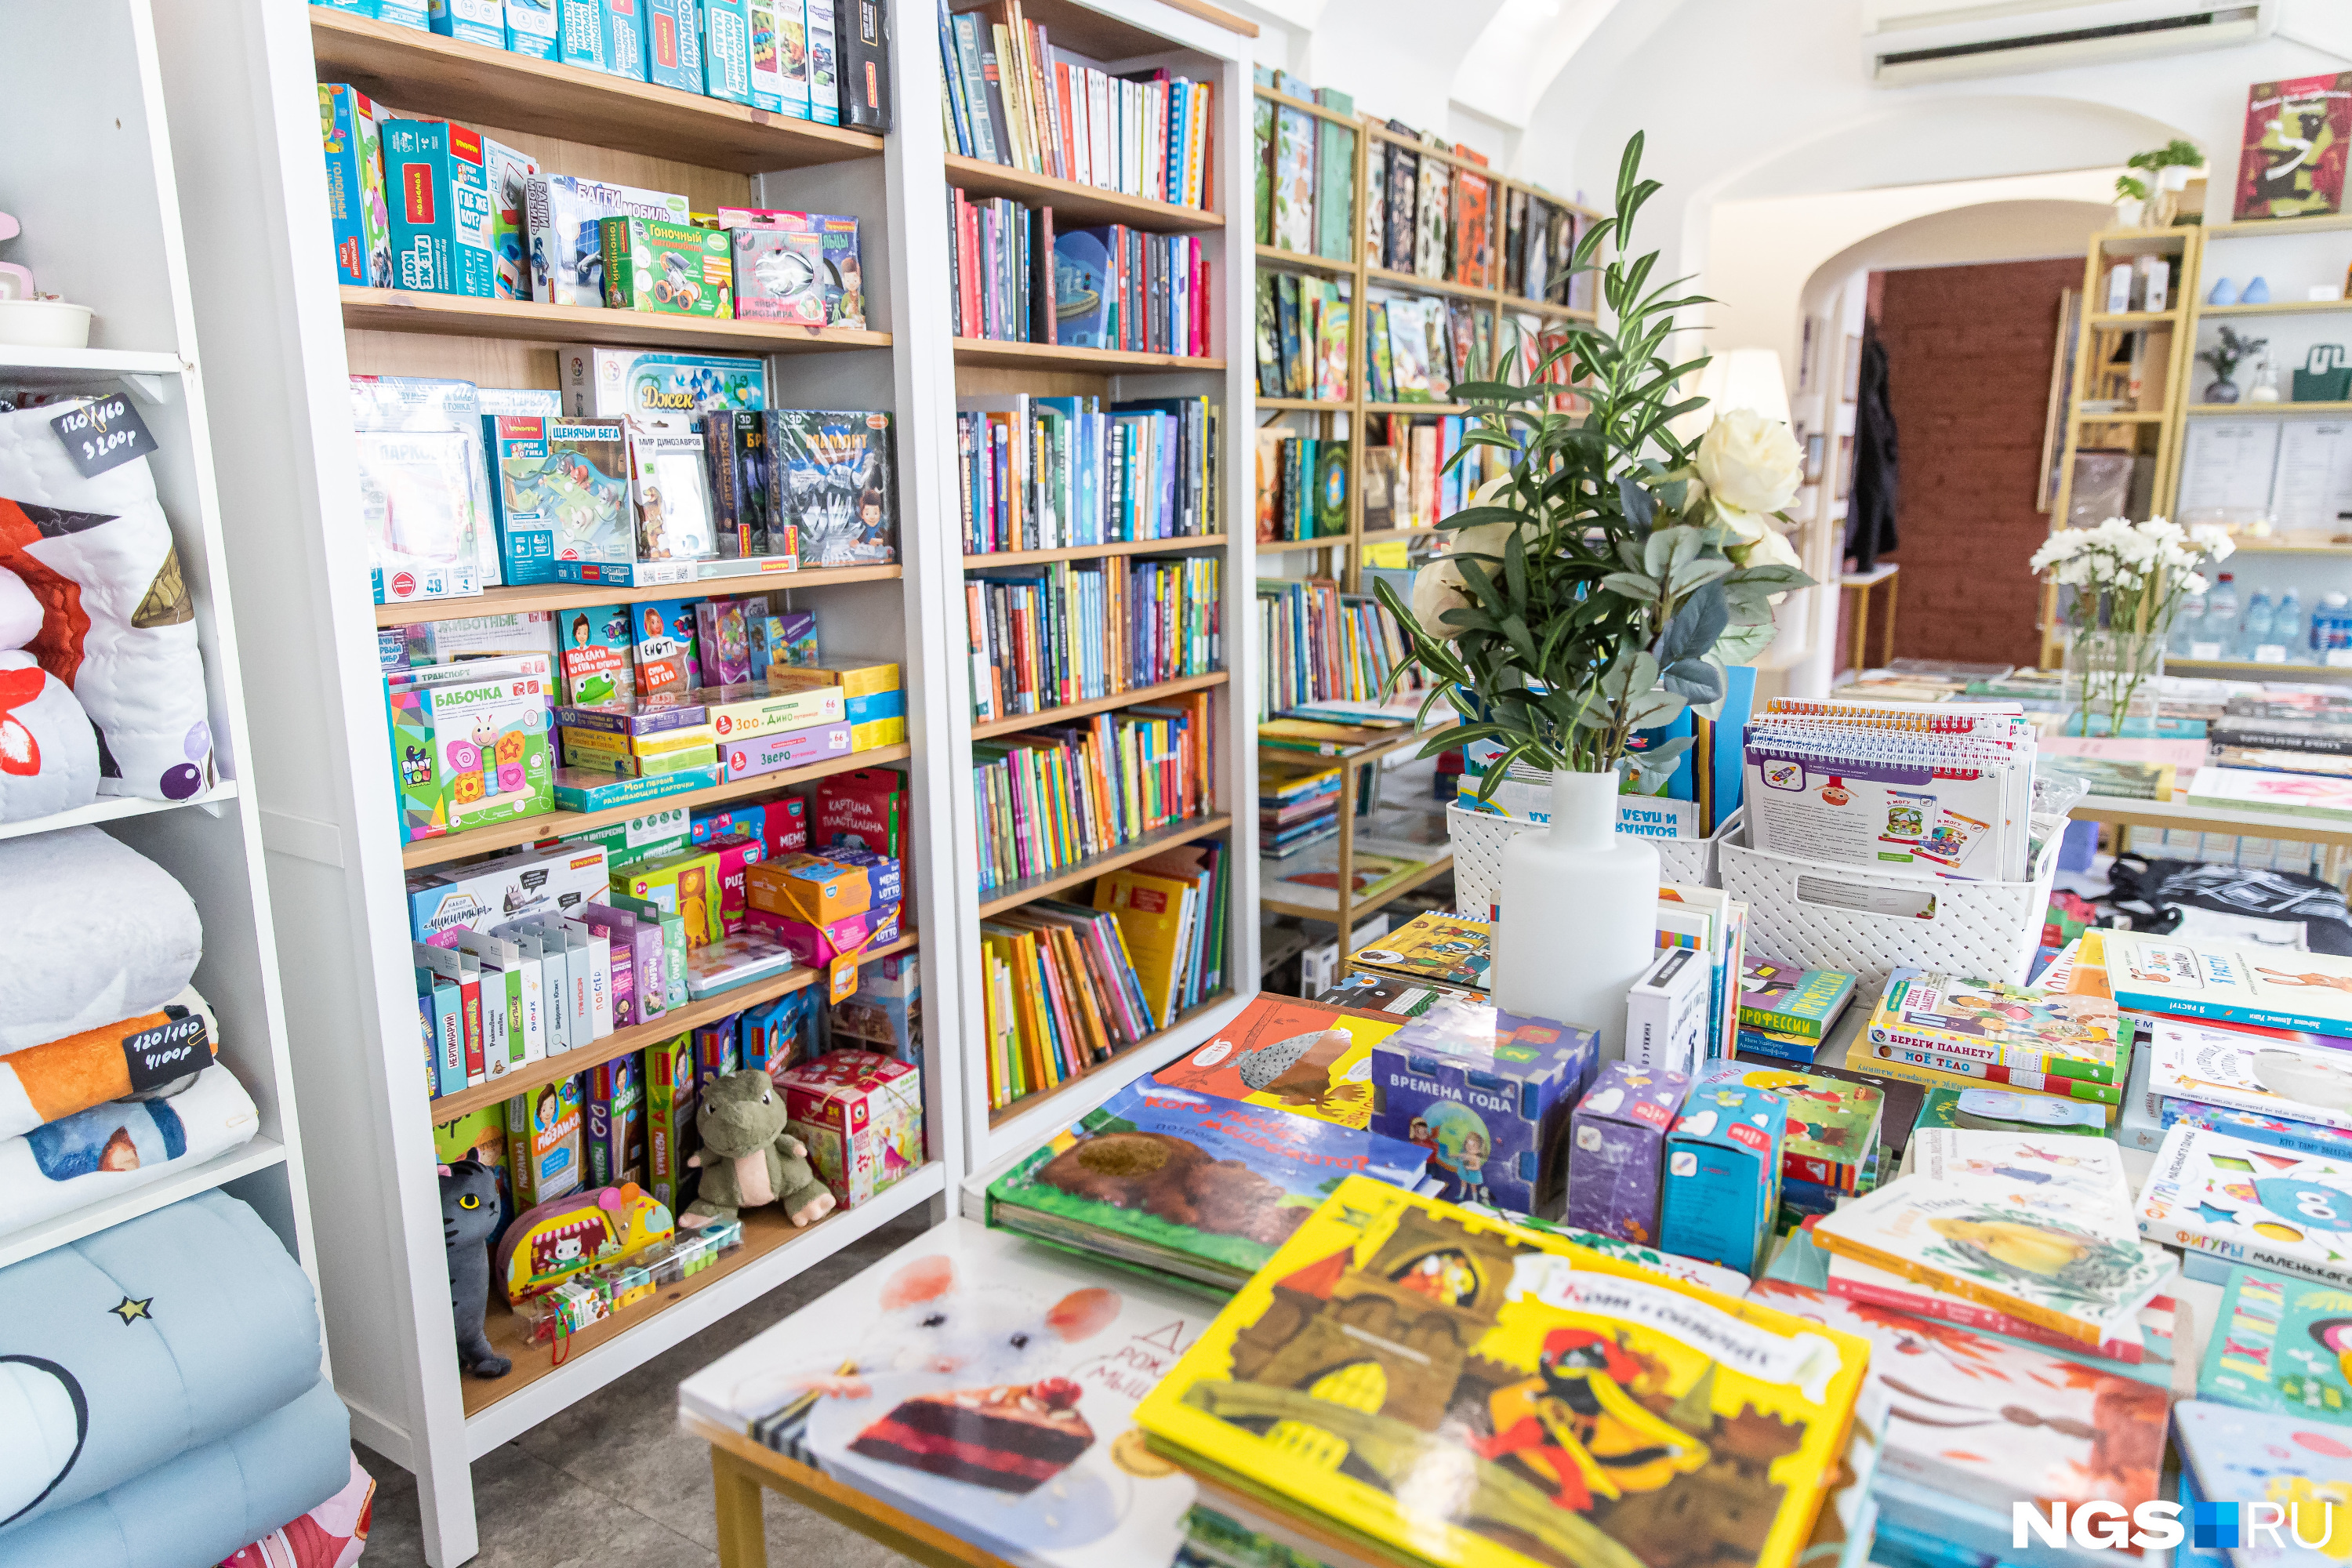 Нгс лове. Детский книжный магазин. Ребенок в книжном магазине. Летние книги для детей и подростков. Перспектива книжных магазинов в нашей стране.